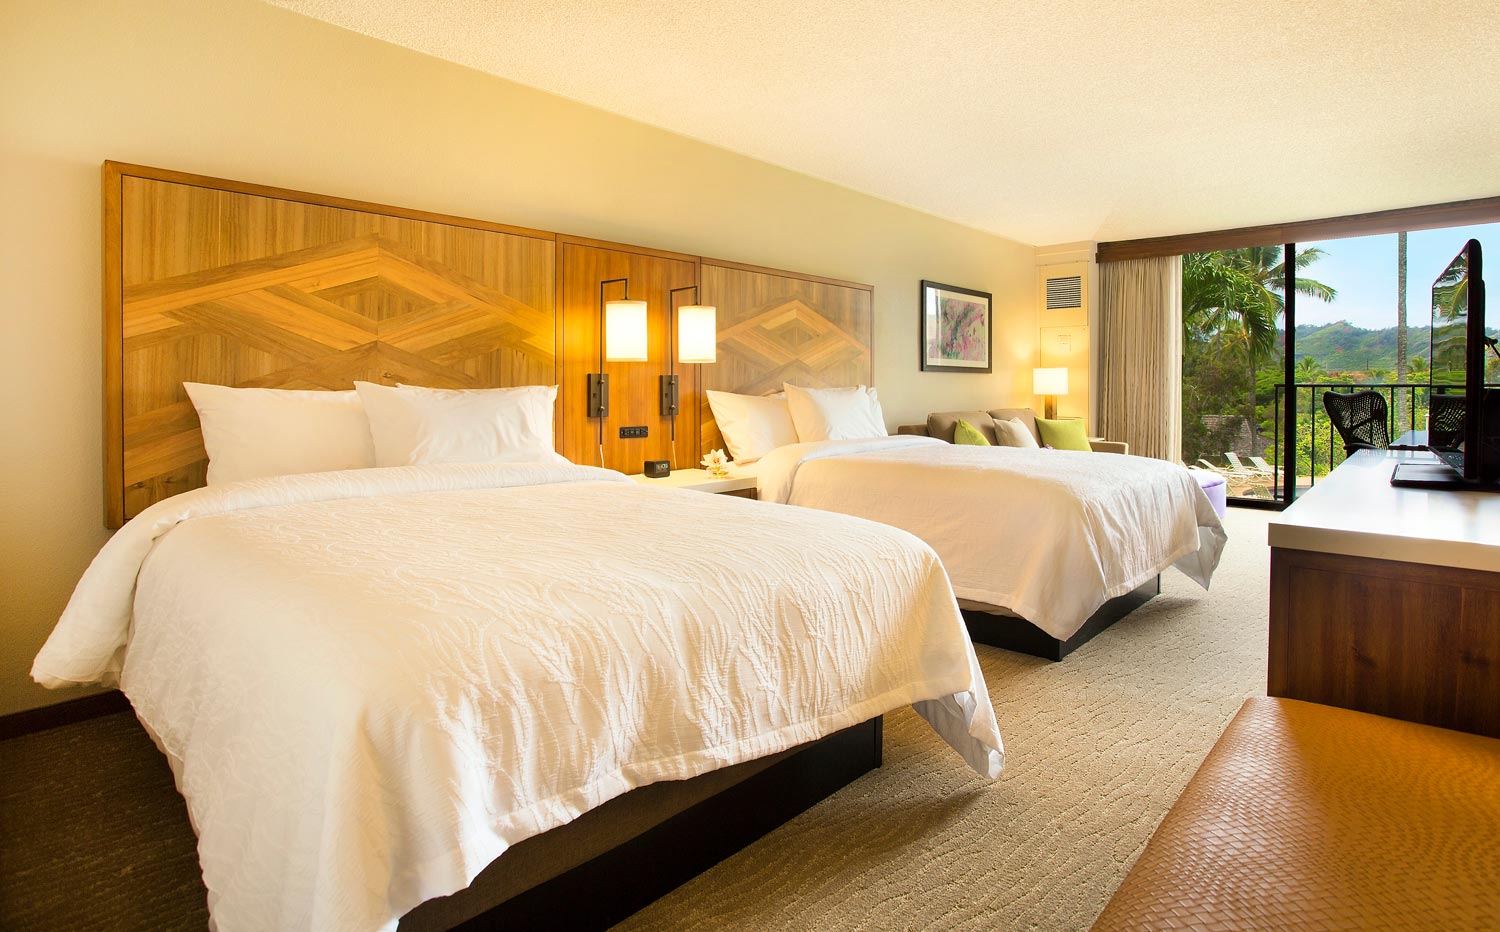 Cheap and Affordable Hotels in Kauai: Hilton Garden Inn Kauai Wailua Bay